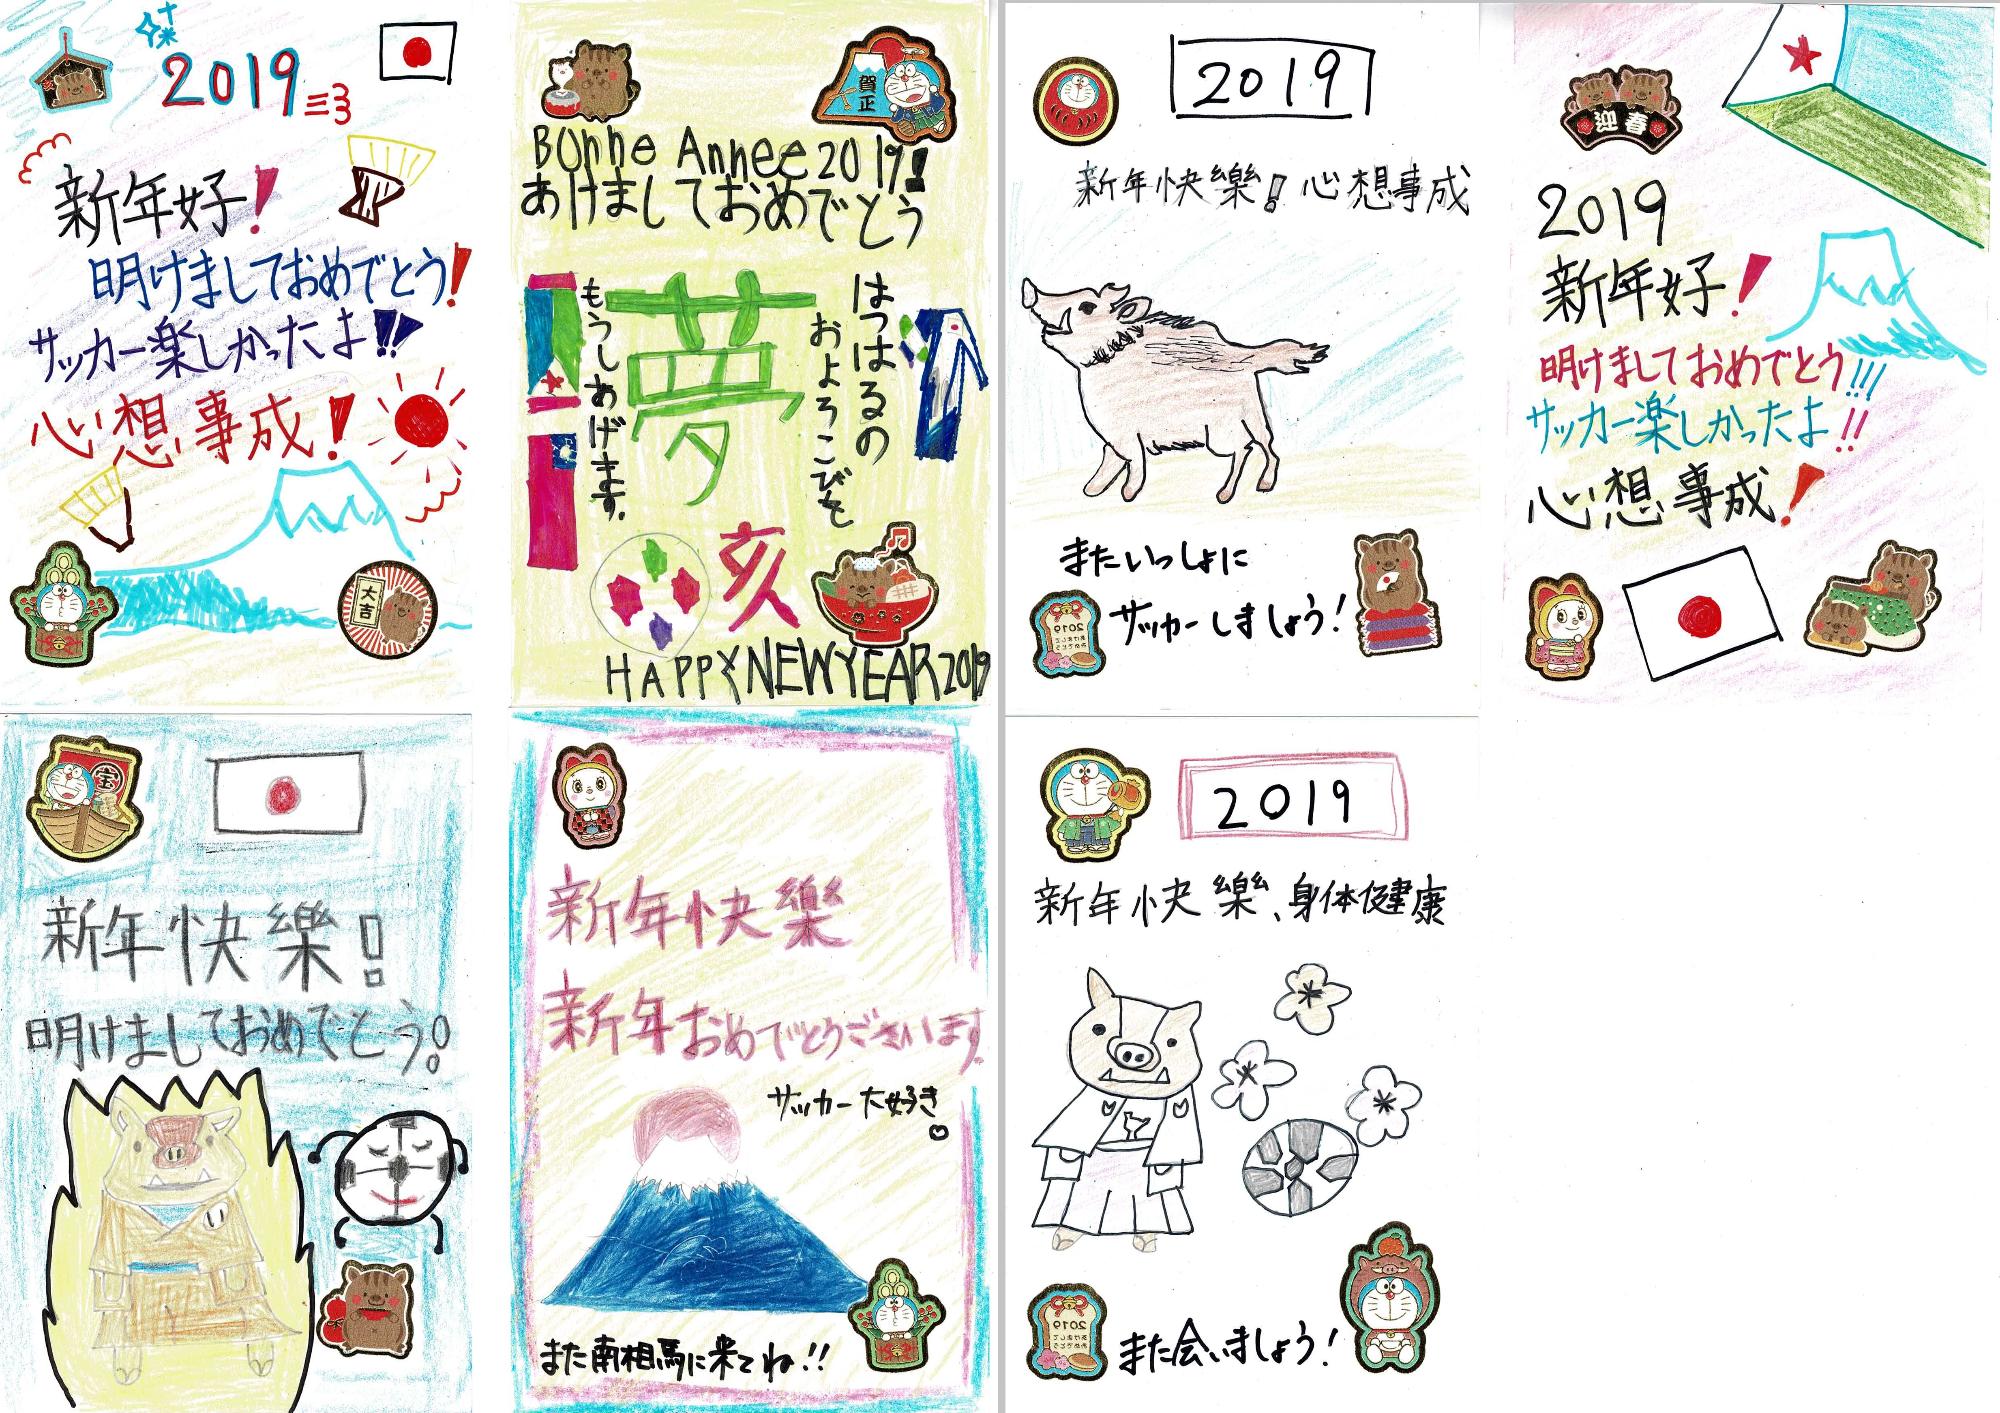 大甕(おおみか)サッカースポーツ少年団の子ども達が台湾の子ども達へ送った年賀状